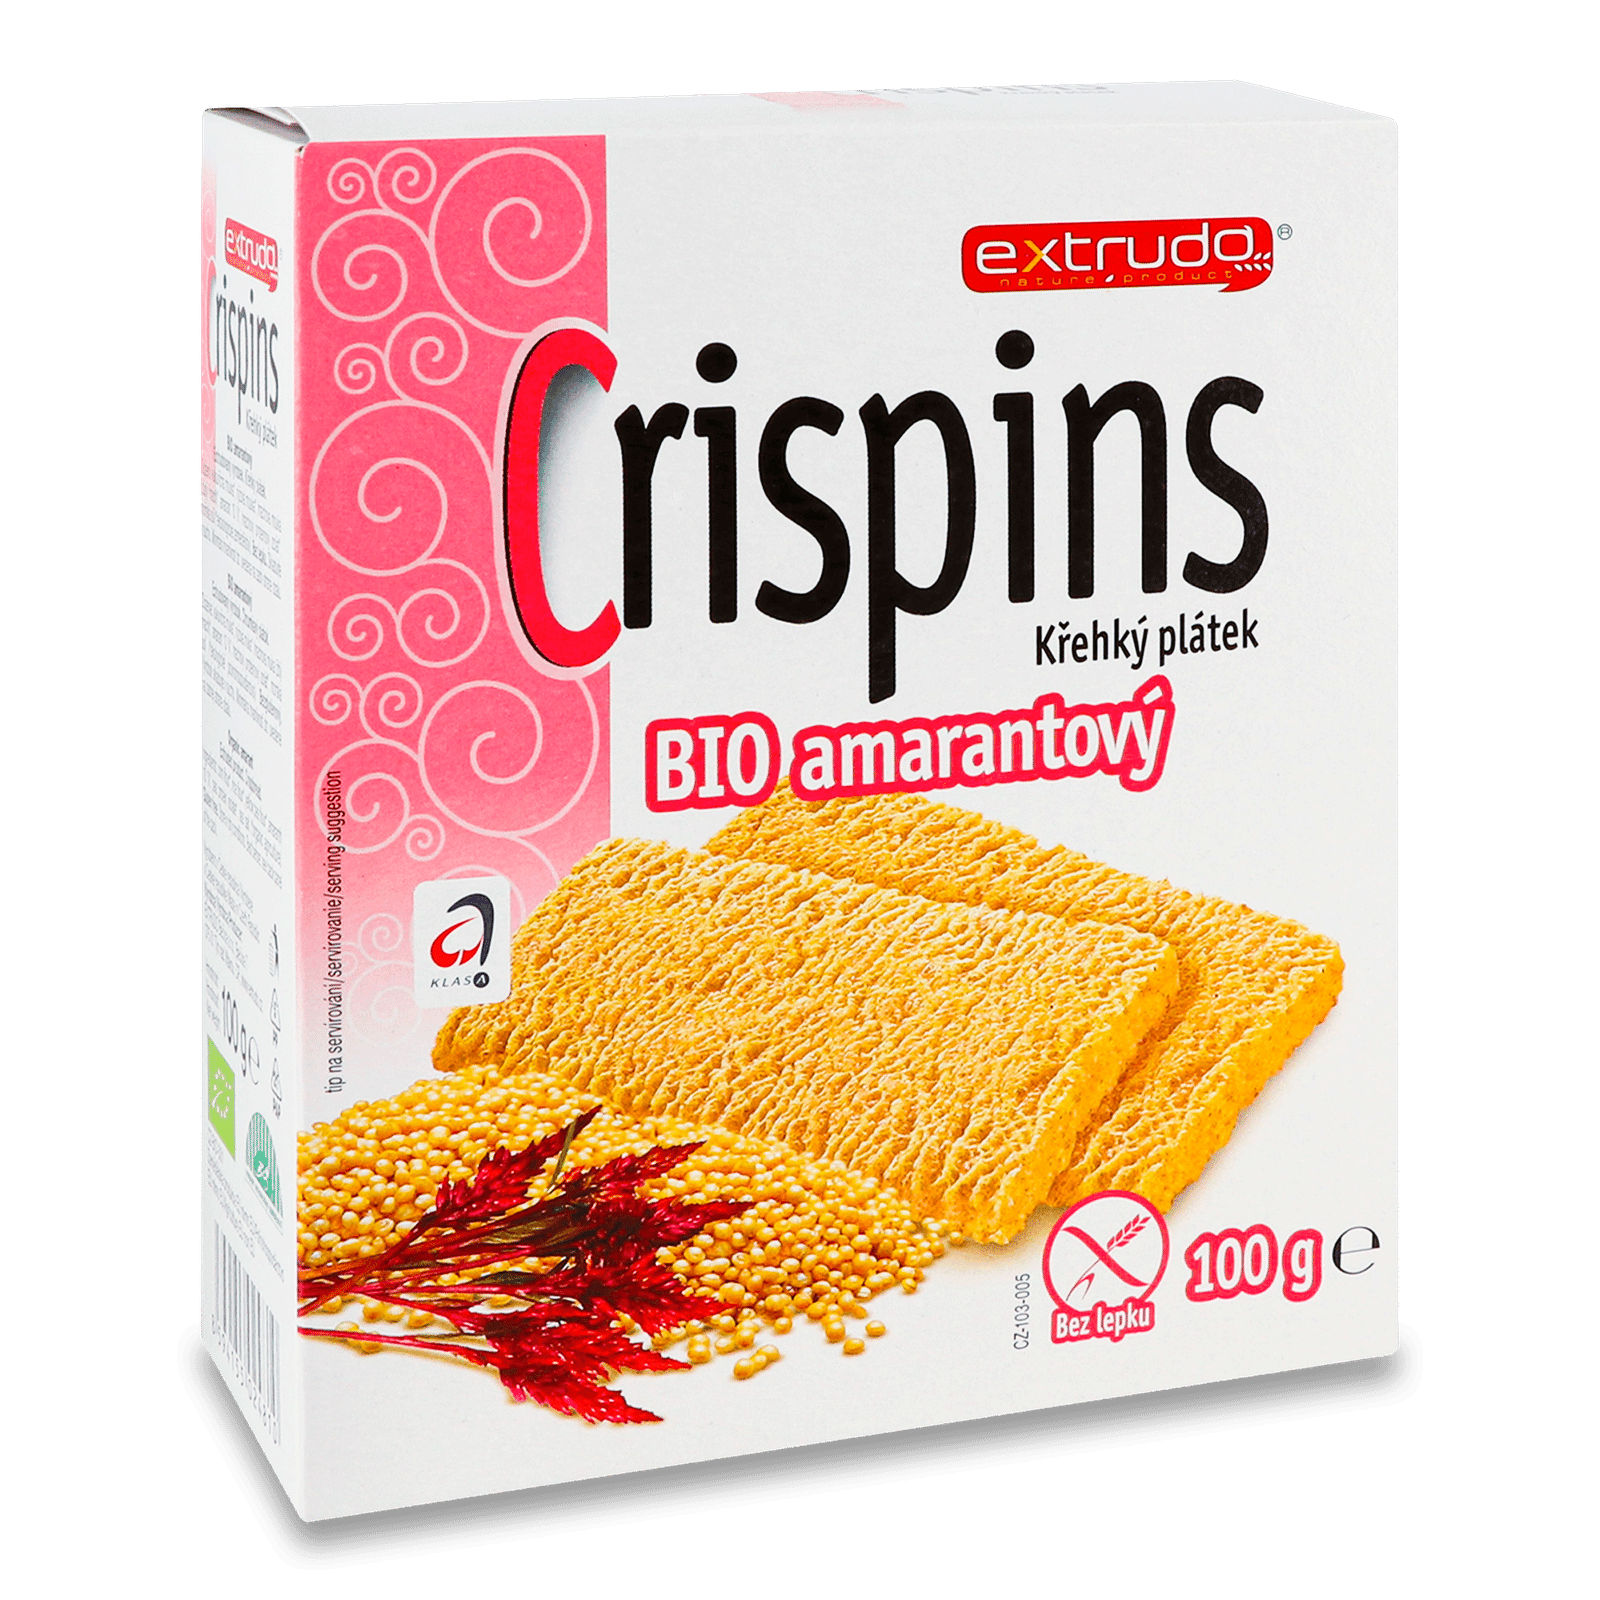 Хлібці Extrudo Crispins органічні з амарантом - 1